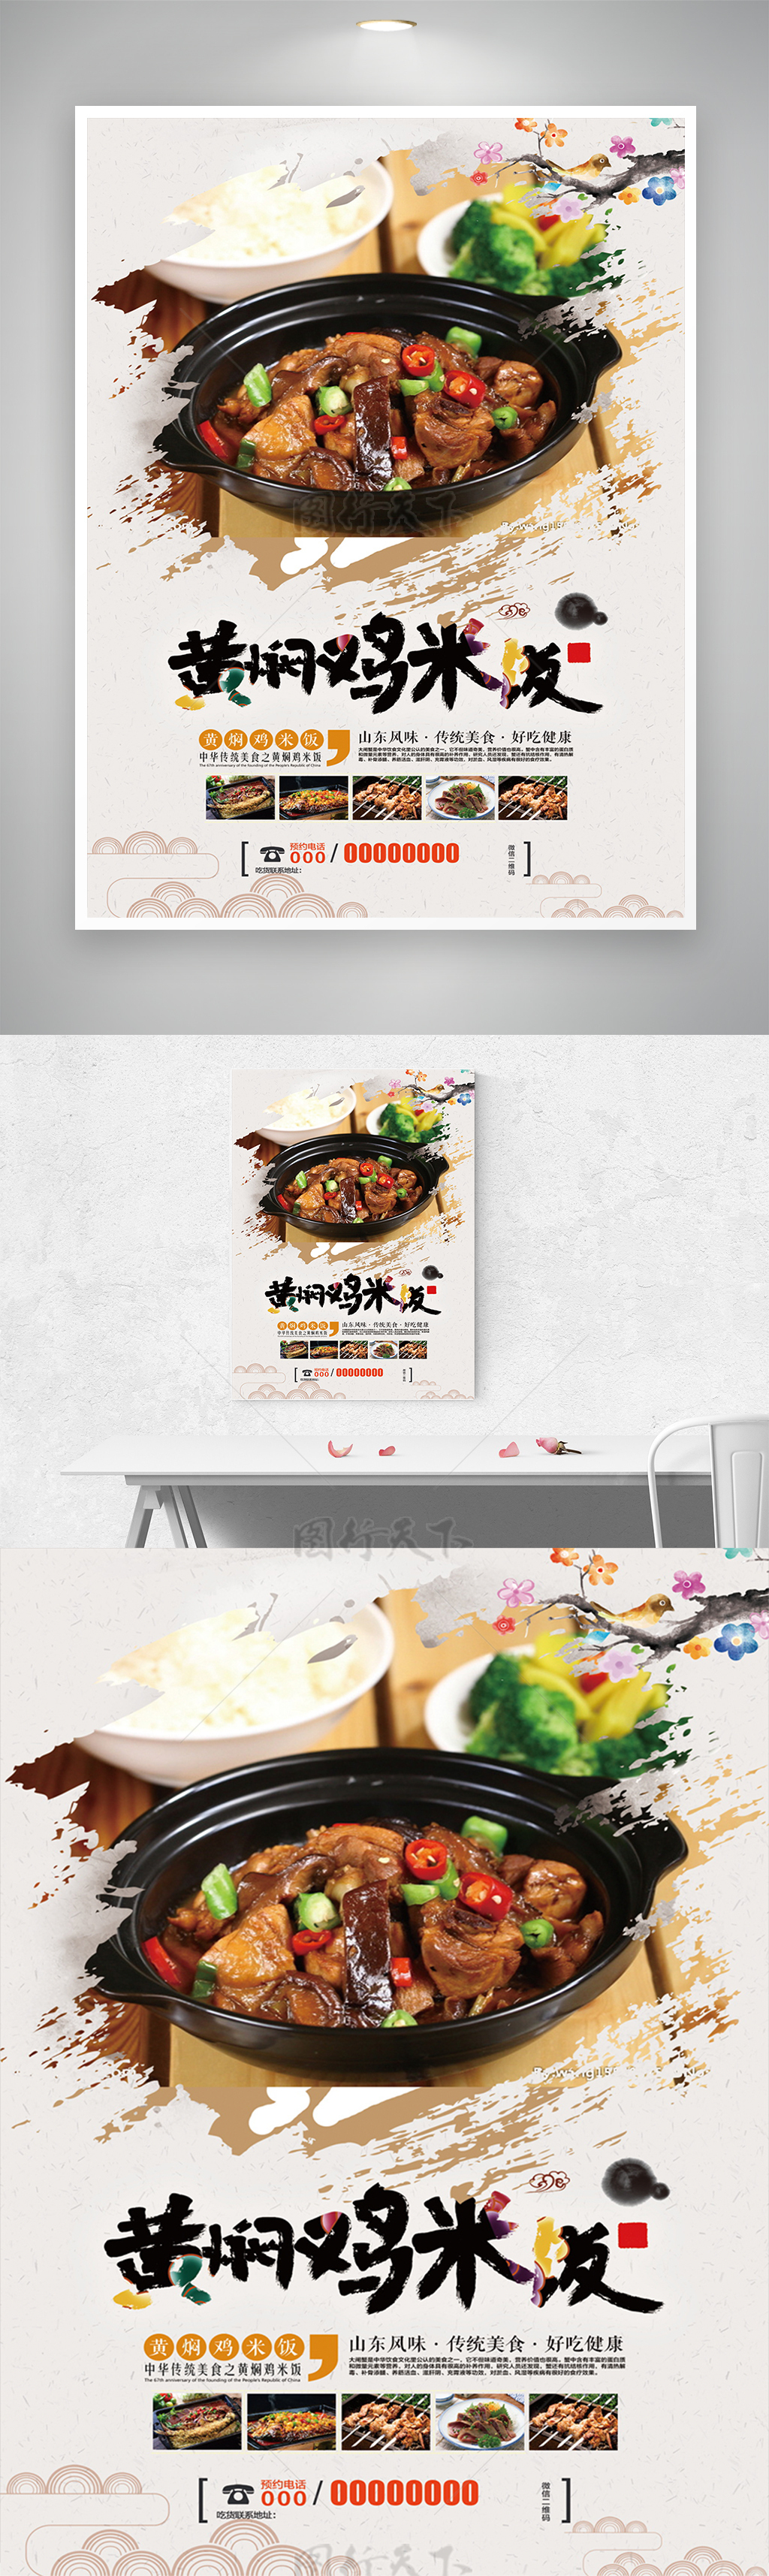 中华传统美食黄焖鸡米饭美味美食海报